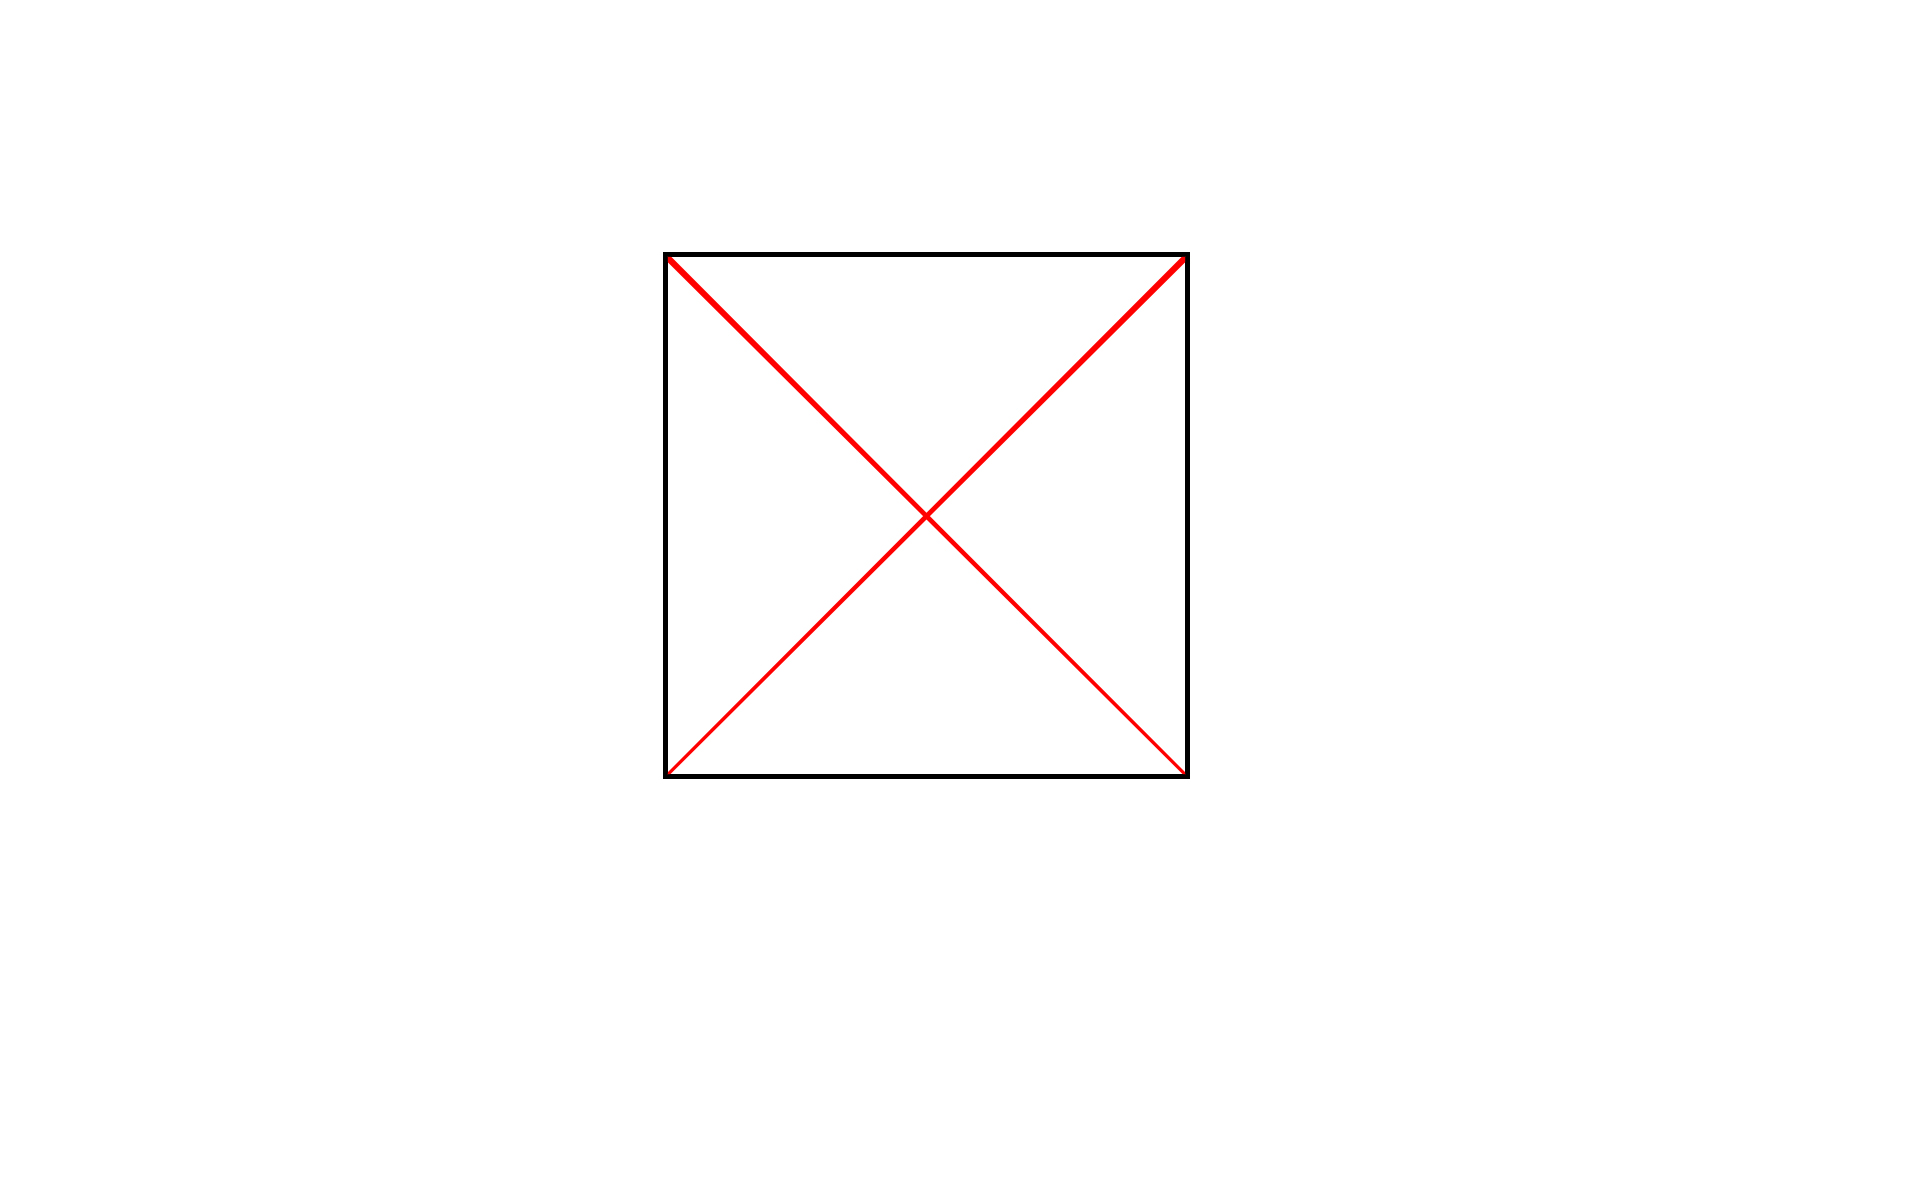 正方形の対角線の交わる角度は90度で